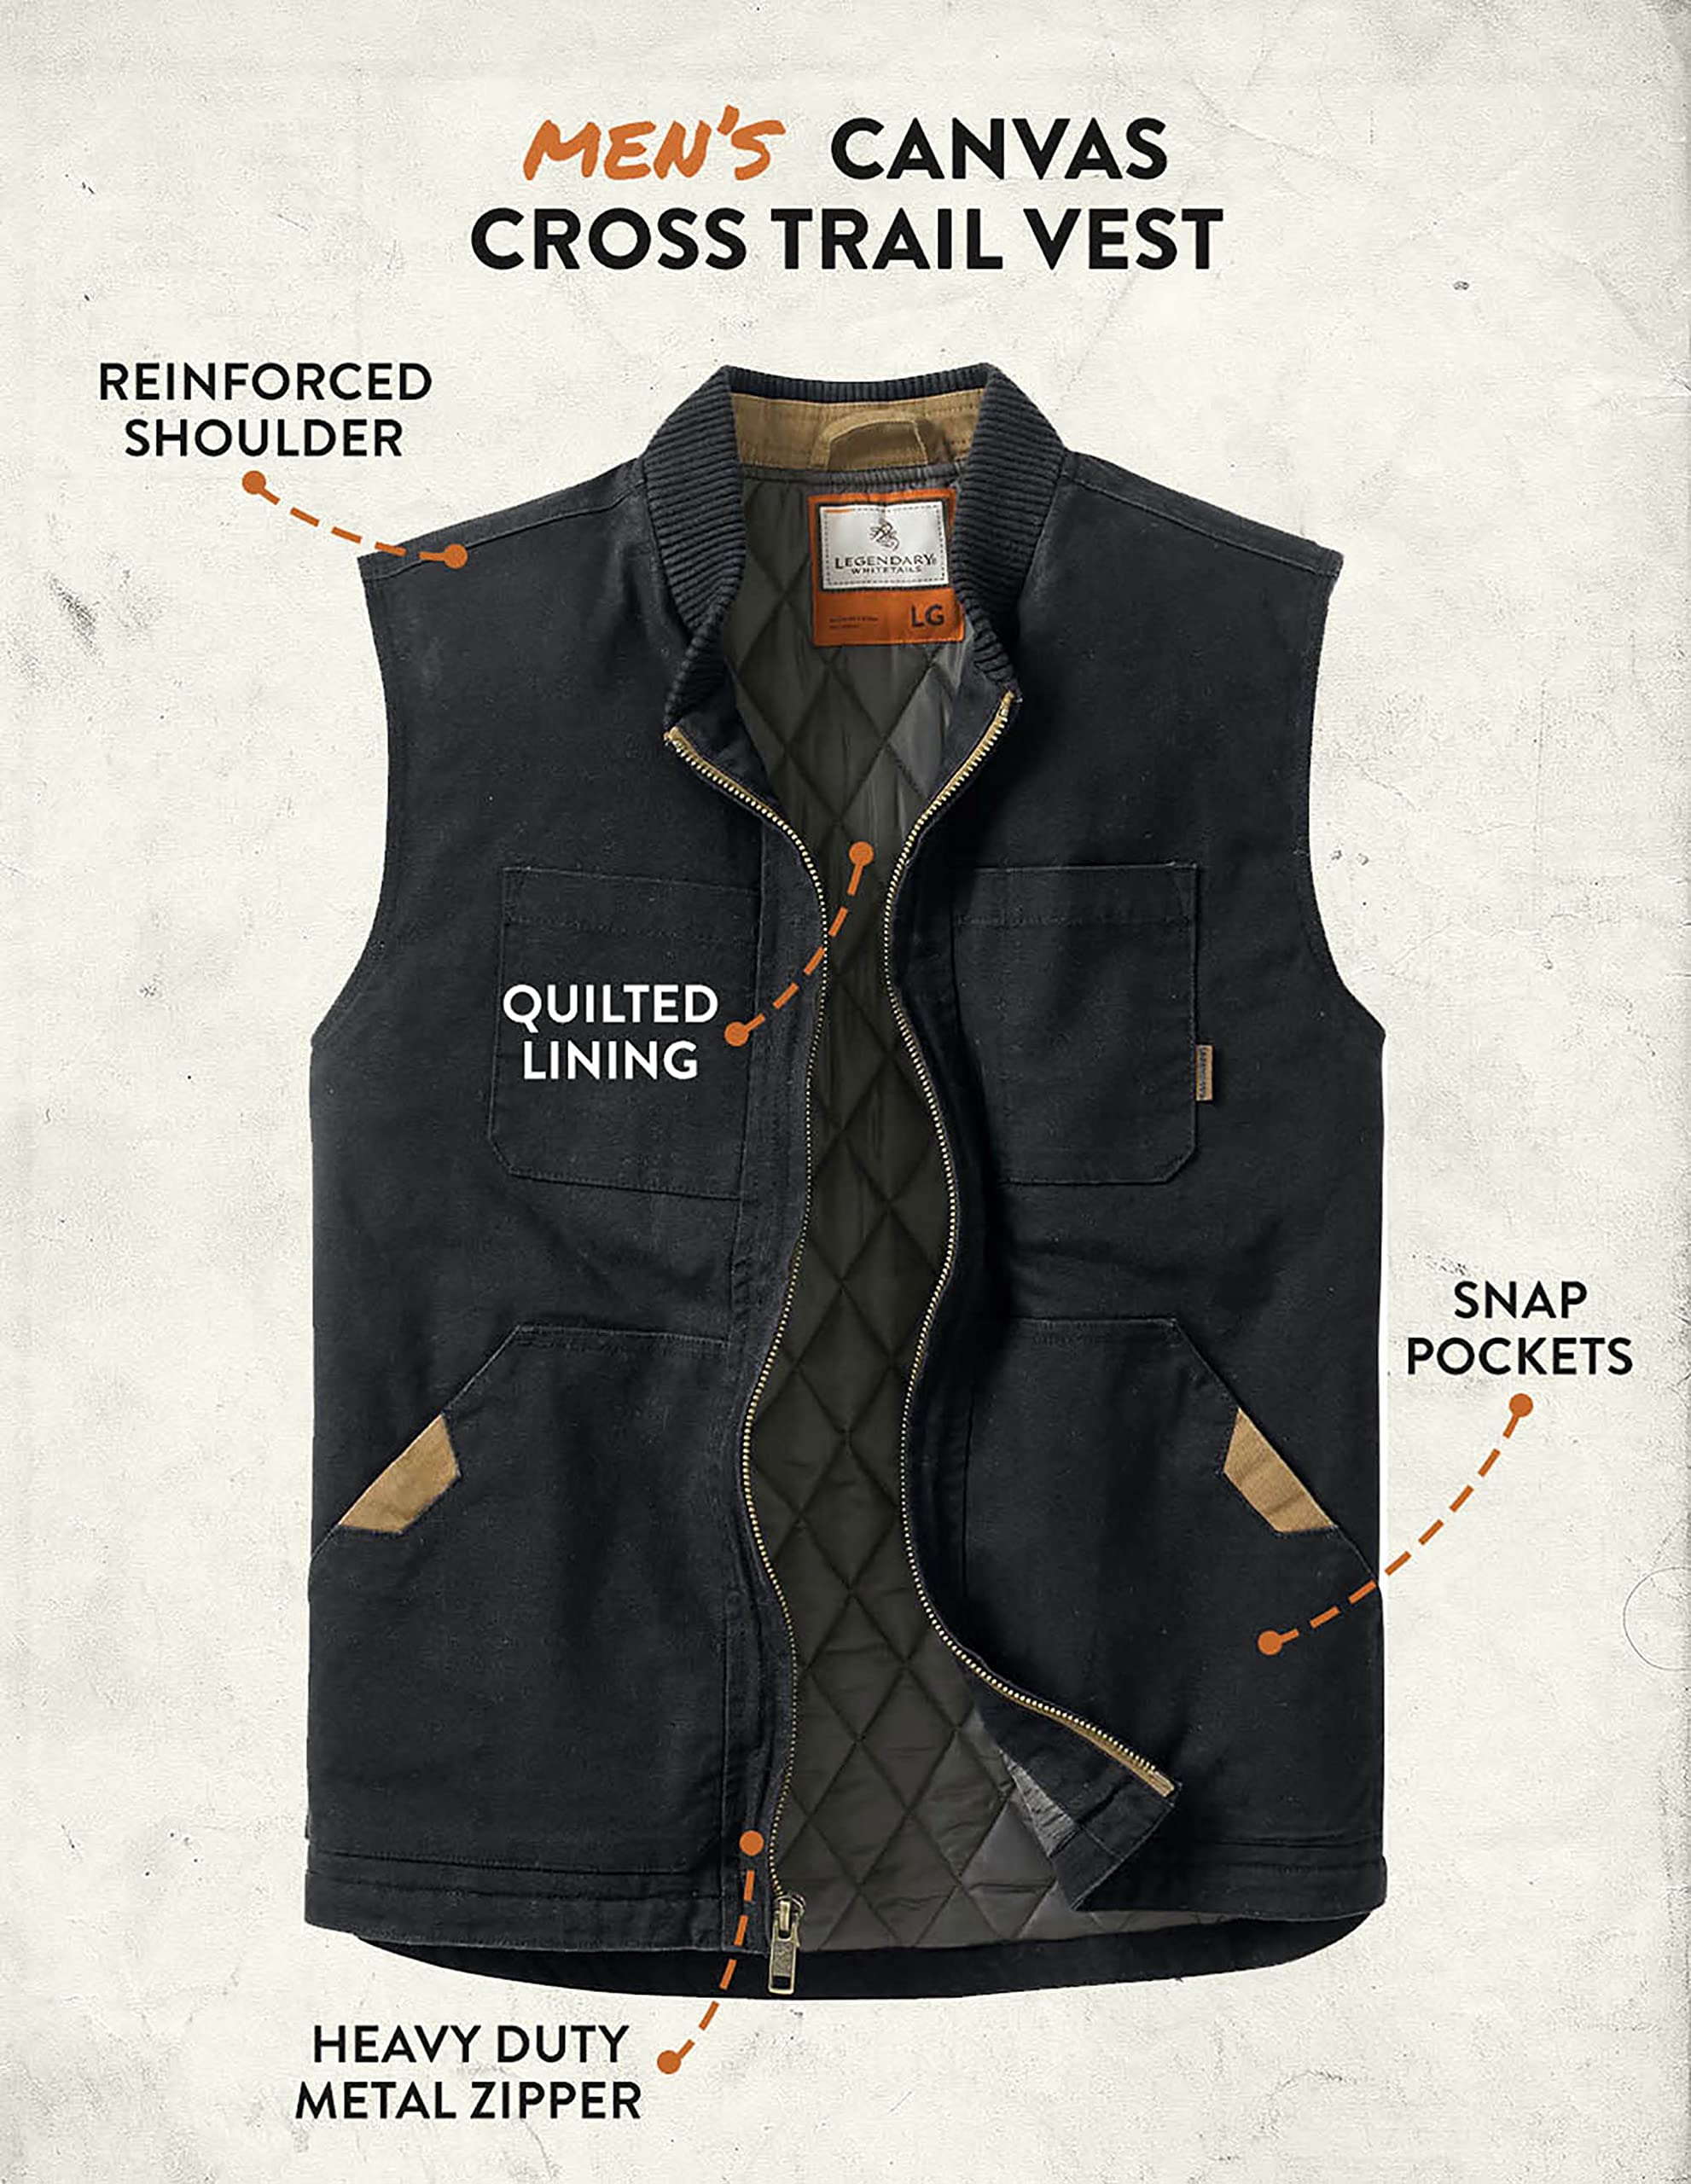 Legendary Whitetails Men's Canvas Cross Trail Vest